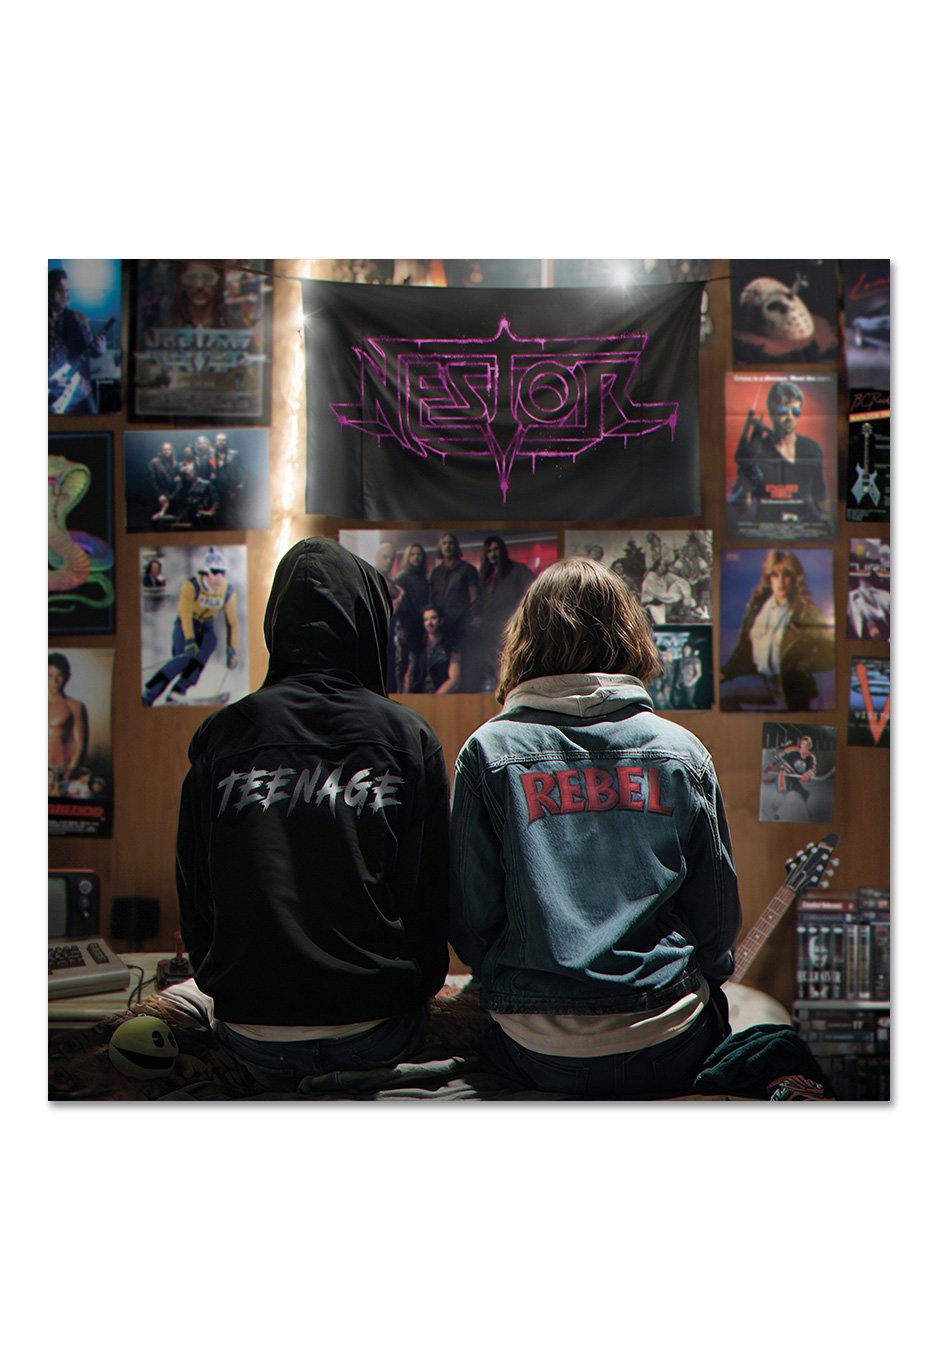 Nestor - Teenage Rebel - Digisleeve CD